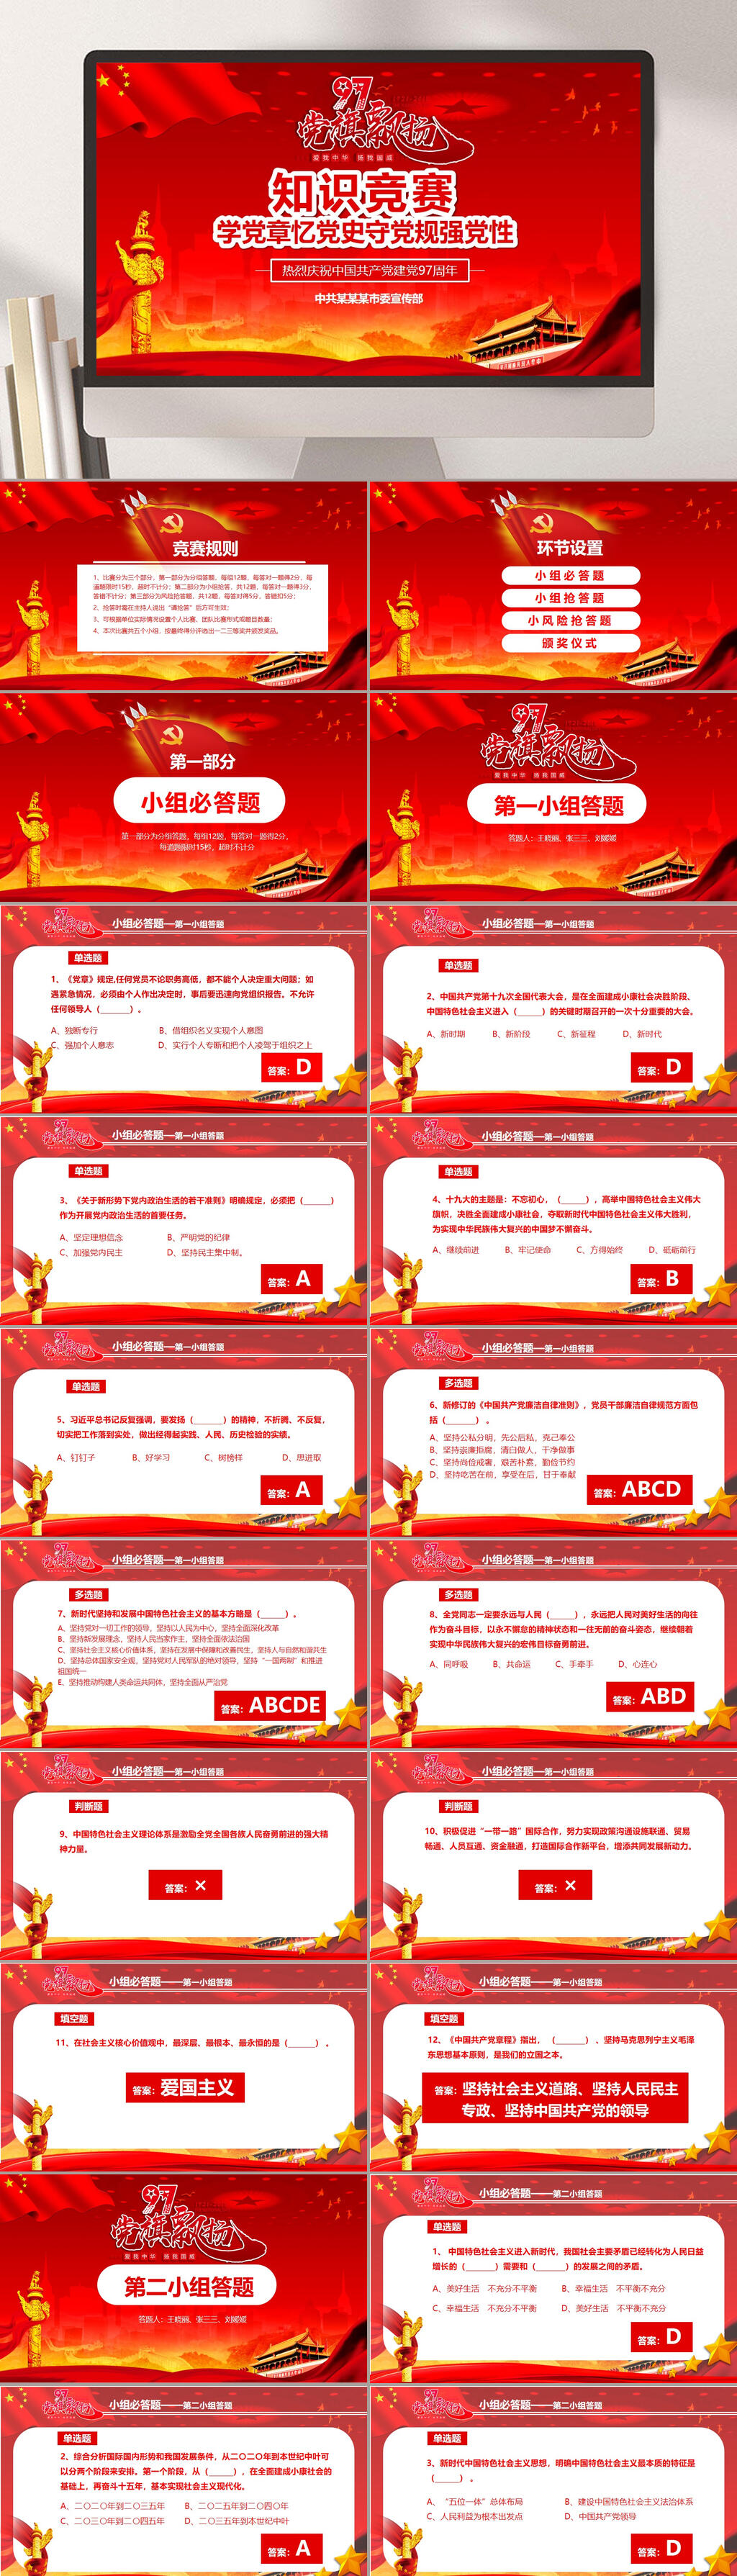 学党章忆党史知识竞赛ppt综合排列热门下载最新上传收起更多格式:全部